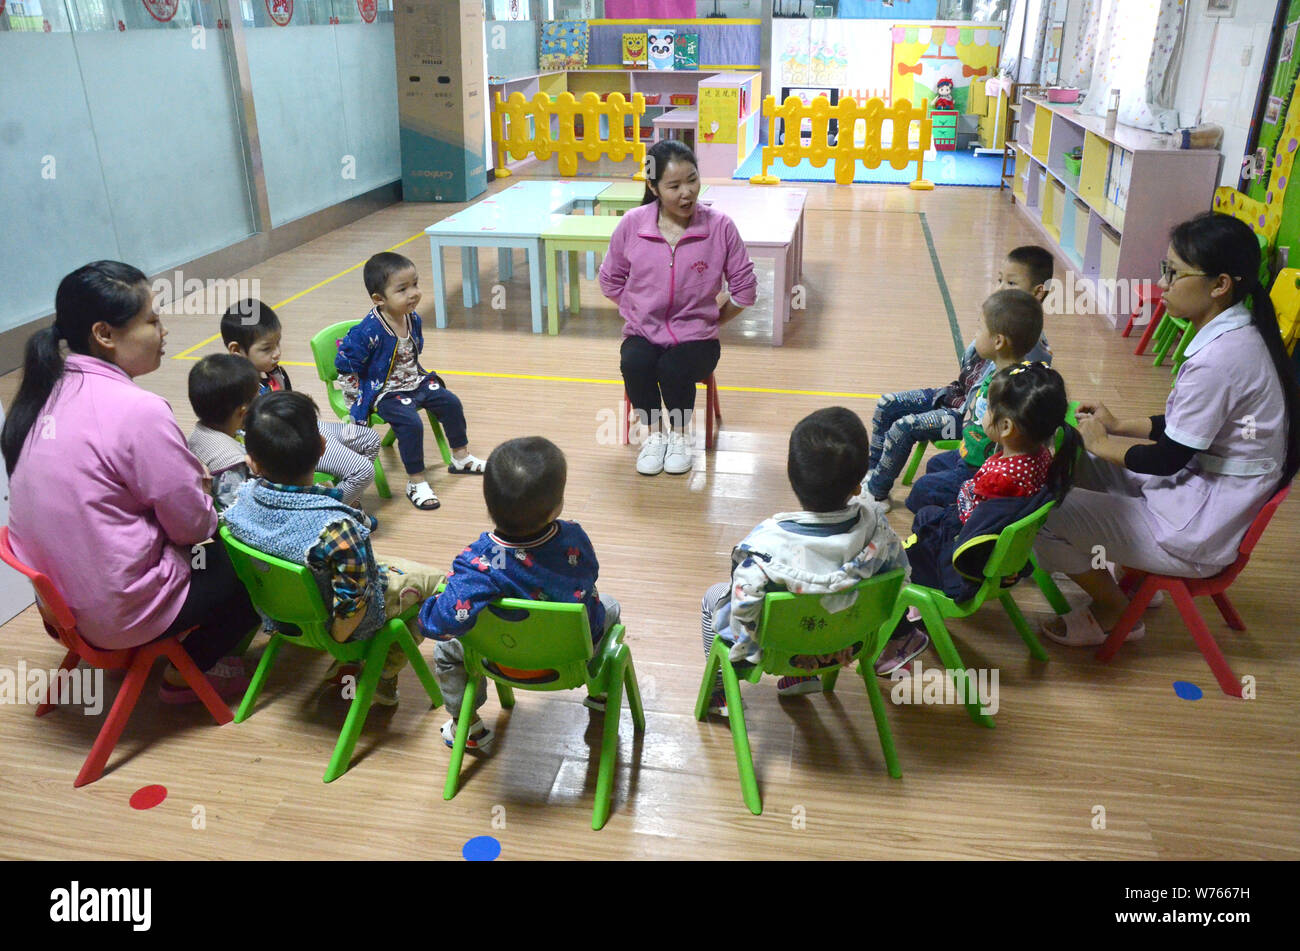 --FILE--un éducateur préscolaire apprend aux enfants à reconnaître les panneaux de sécurité à un jardin d'enfants à Yichang city, province du Hubei en Chine centrale, 1 septembre Banque D'Images